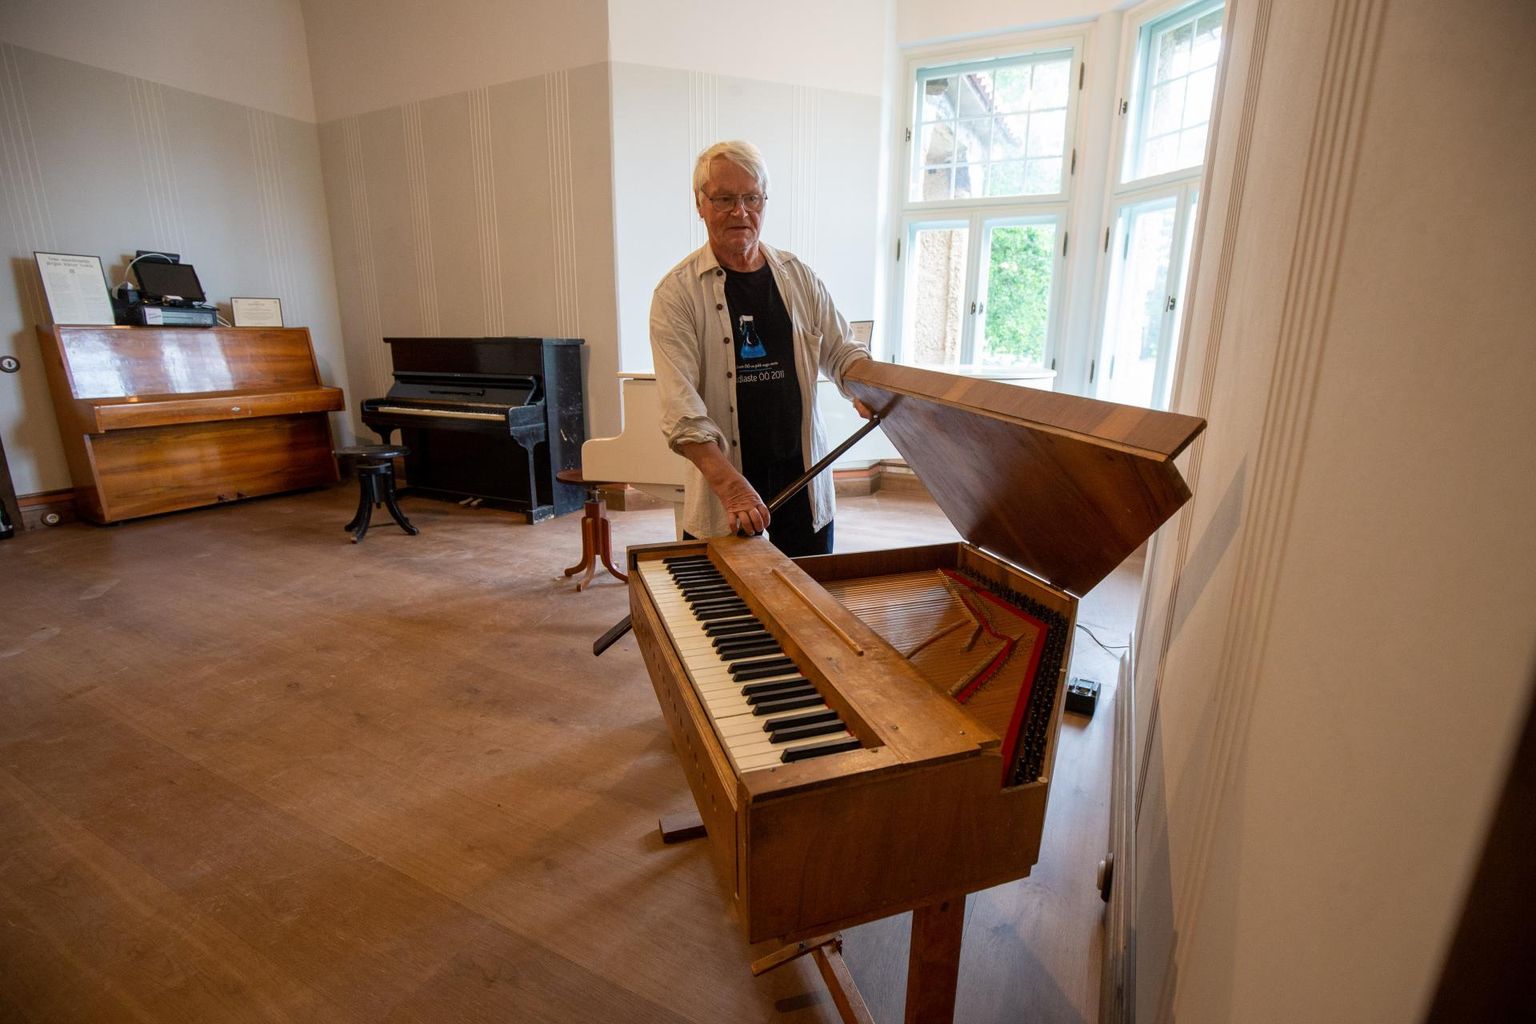 Hummuli mõisas astub rahva ette ka helilooja ja muusikateadlane, Eesti rahvusliku klaverimuuseumi juht Alo Põldmäe.